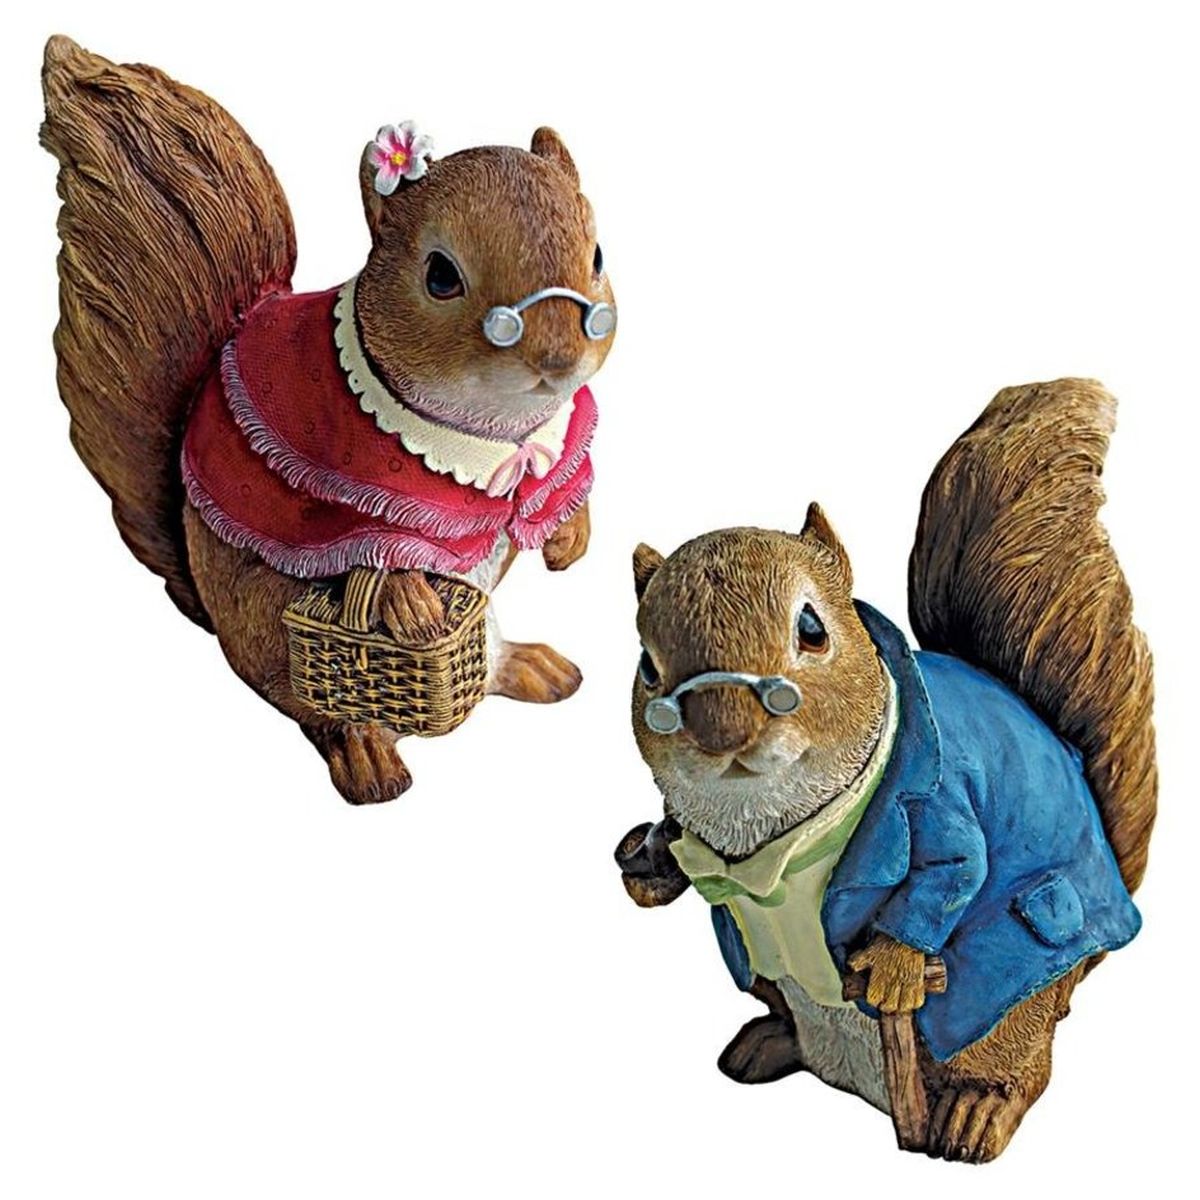 Grandpa and Grandma Squirrel Statues